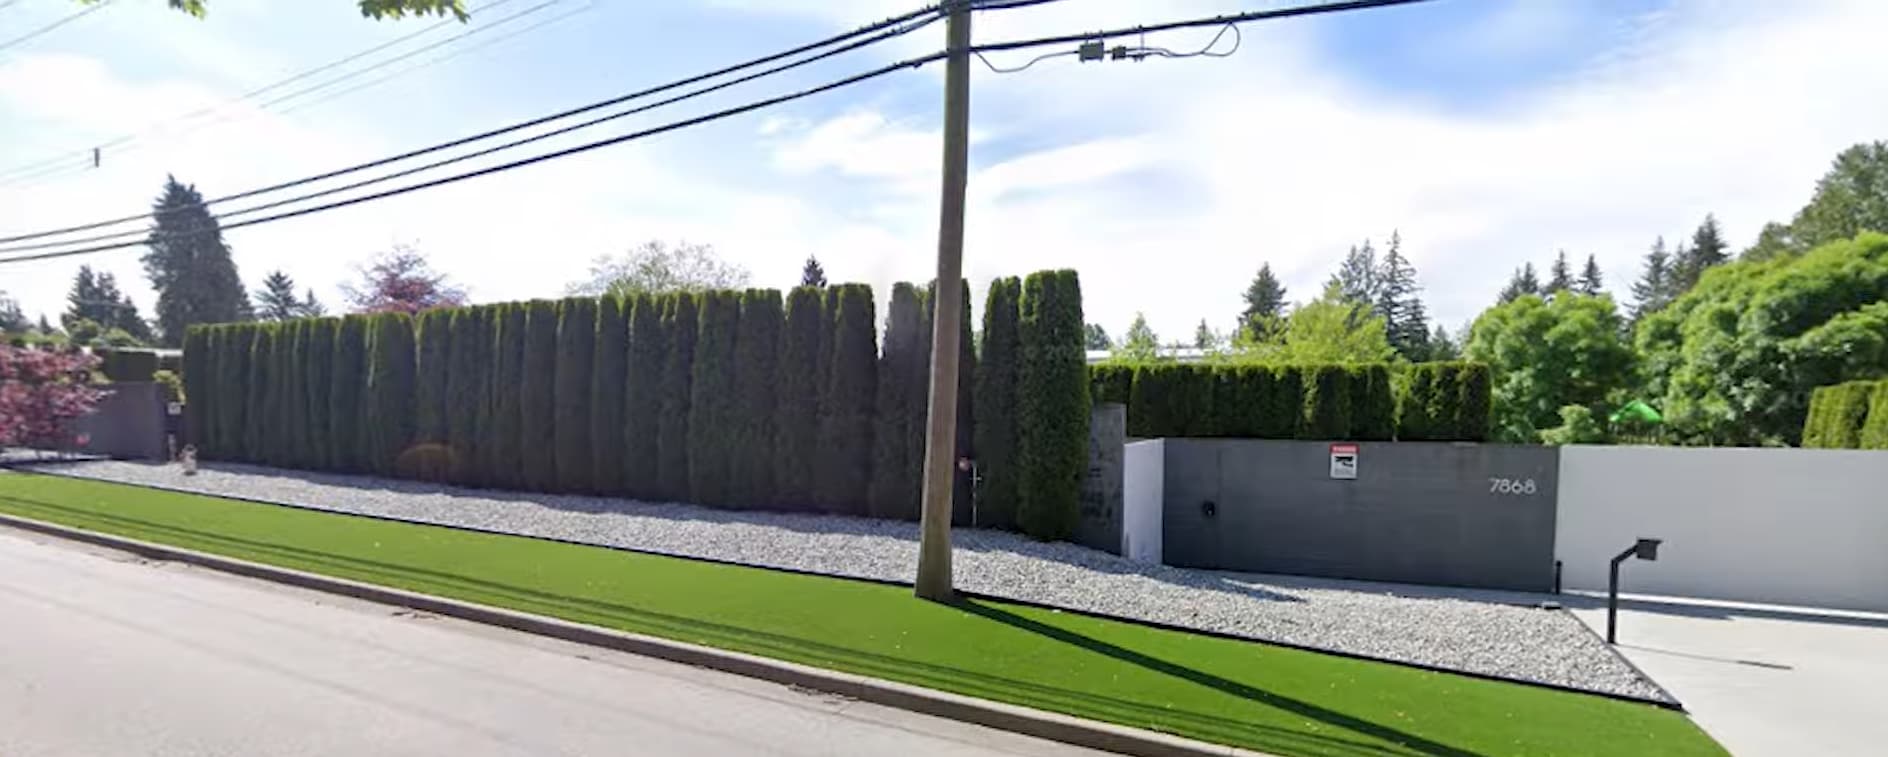 Michael Bublé's house (Source: Google Maps)